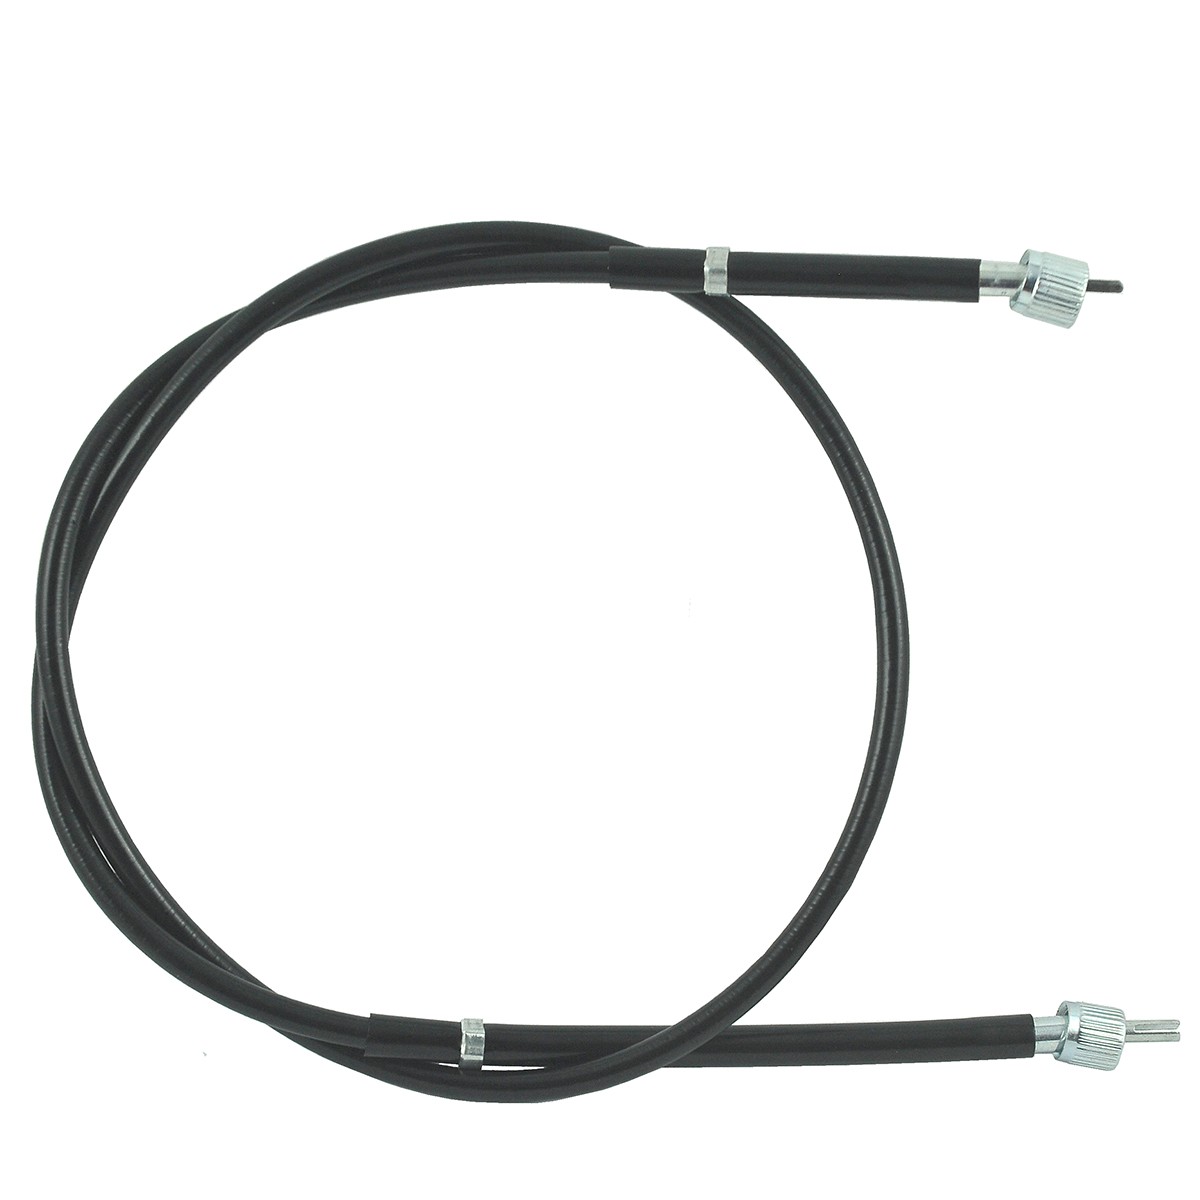 Counter cable / 1445 mm / Kubota L3600/L4200/L4310/L4508/L4610 / TA040-30610 / W9501-45001 / 5-25-123-14